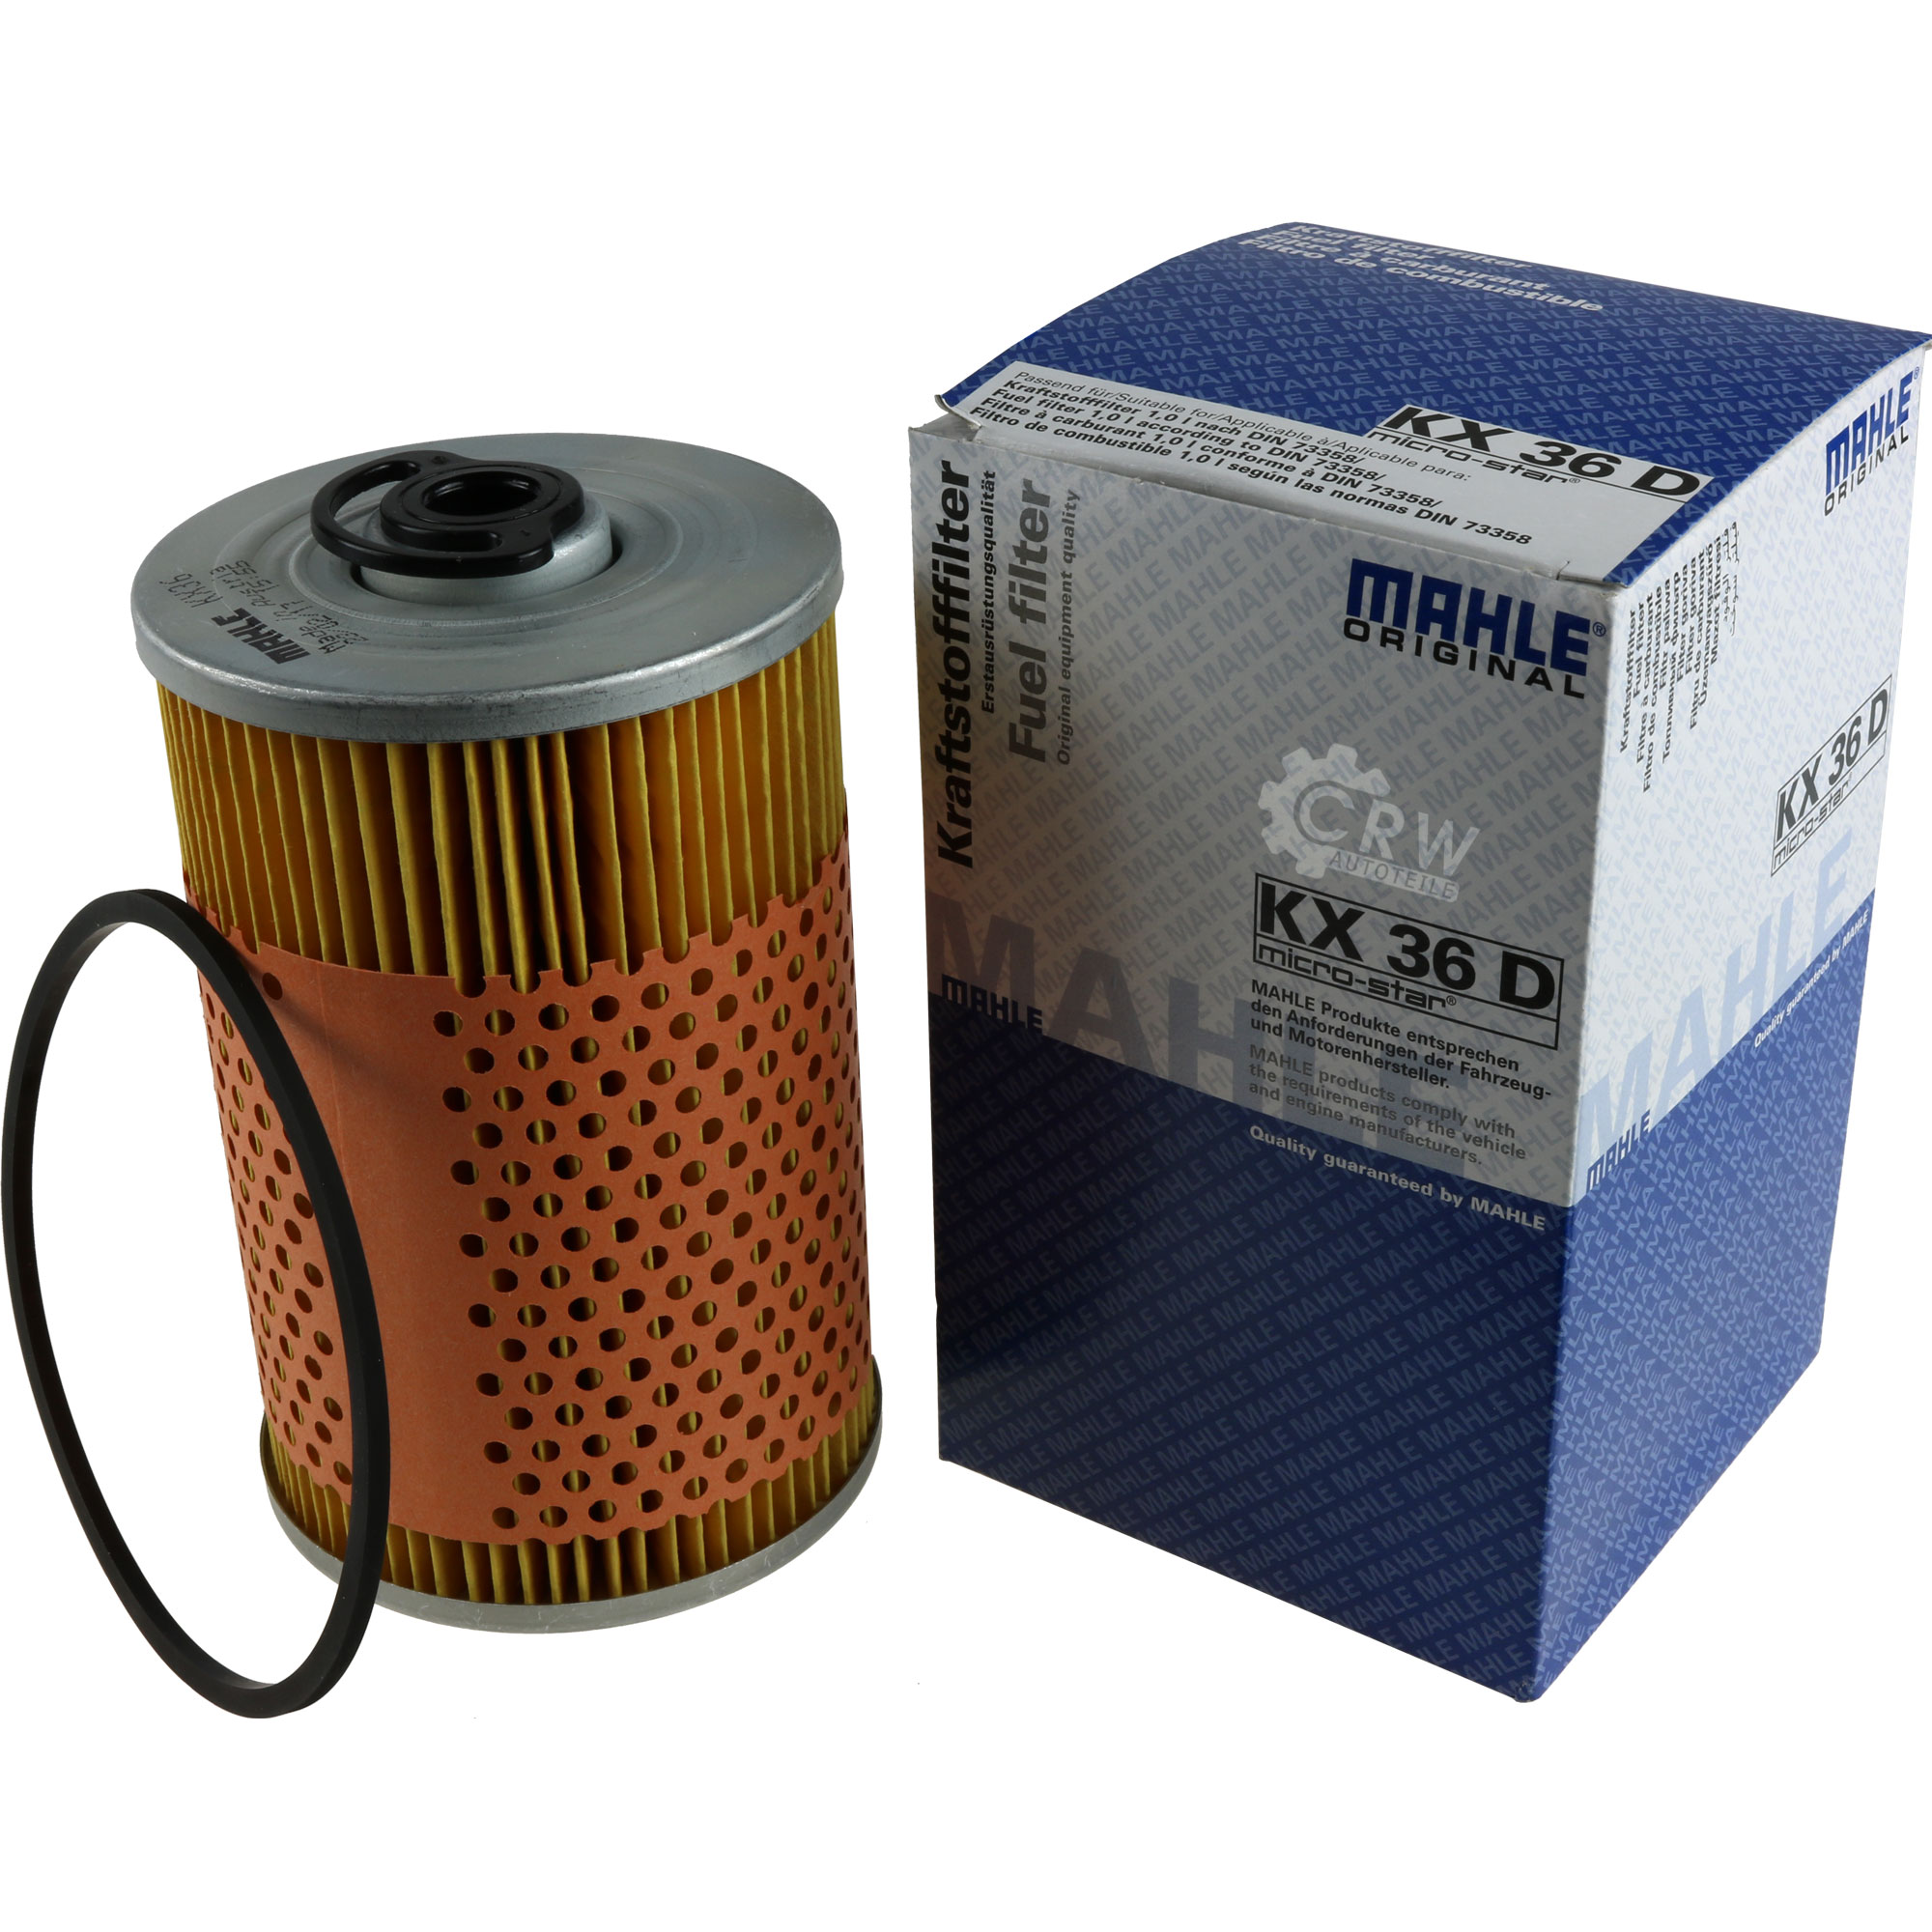 MAHLE Kraftstofffilter KX 36D Fuel Filter